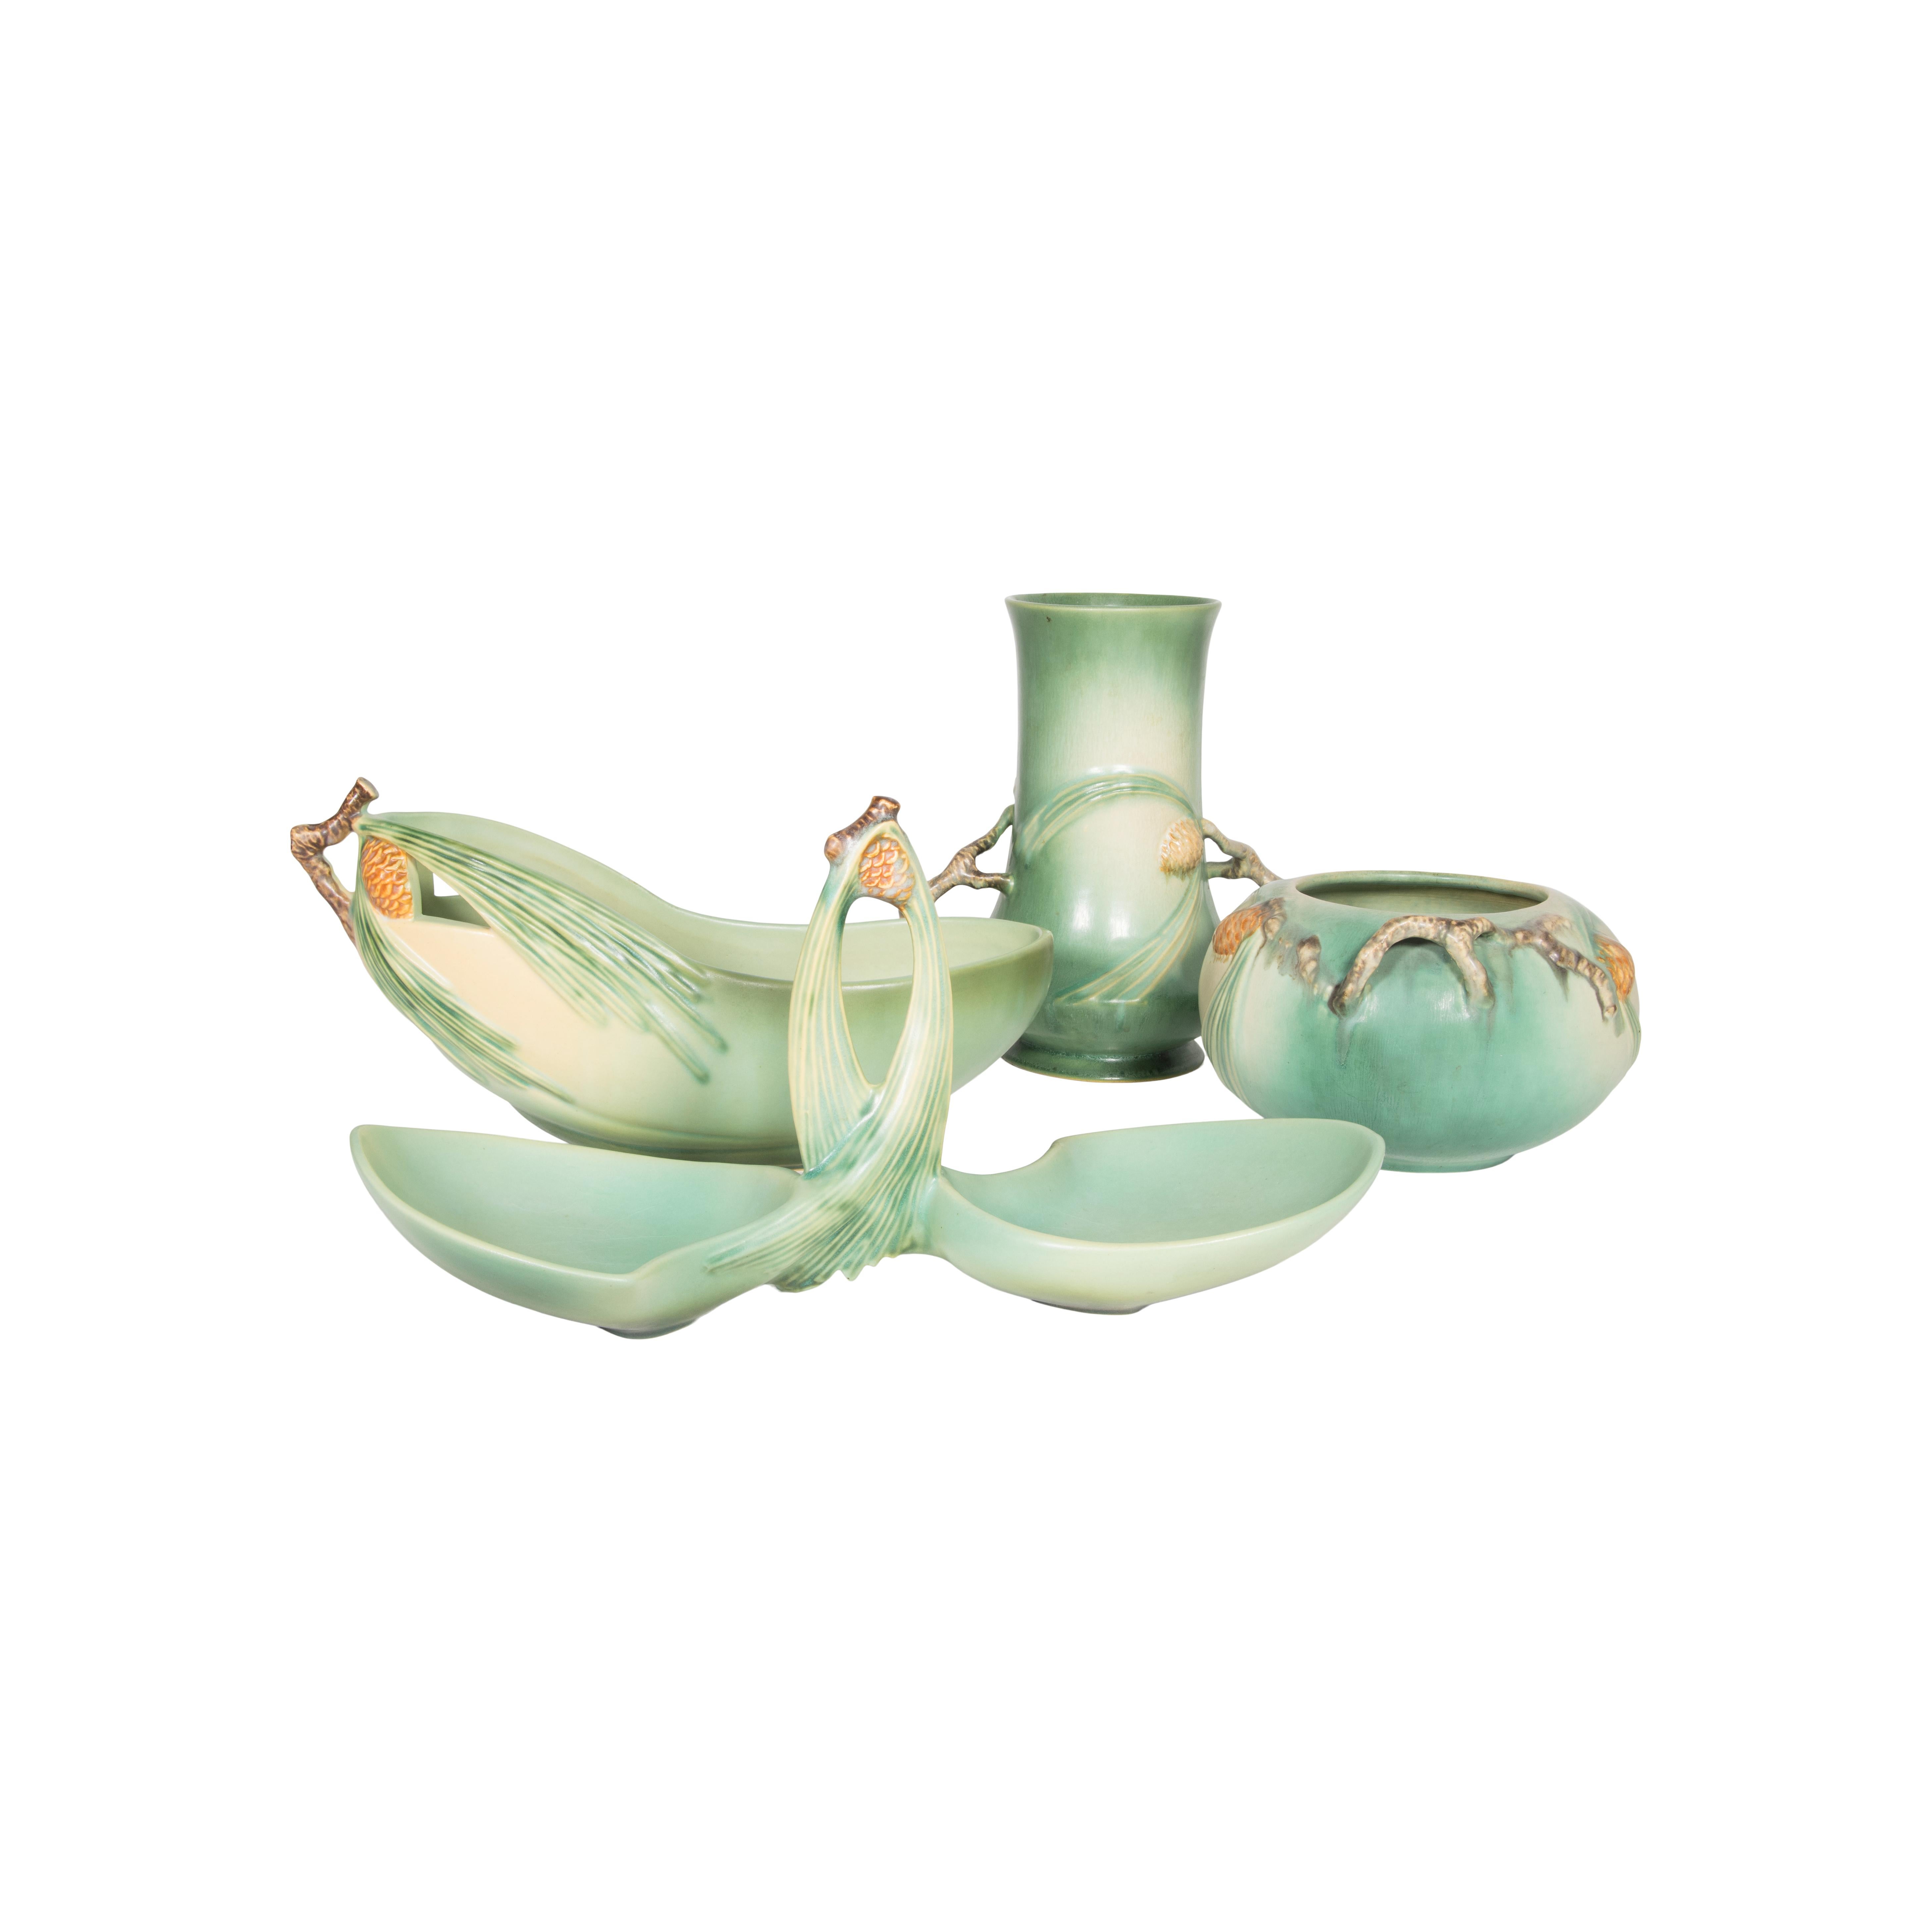 Collectional de poteries vertes de Roseville Pinecone. Quinze pièces dont : Vase 748-6, bol 278-4, vase 745-7, vase 9